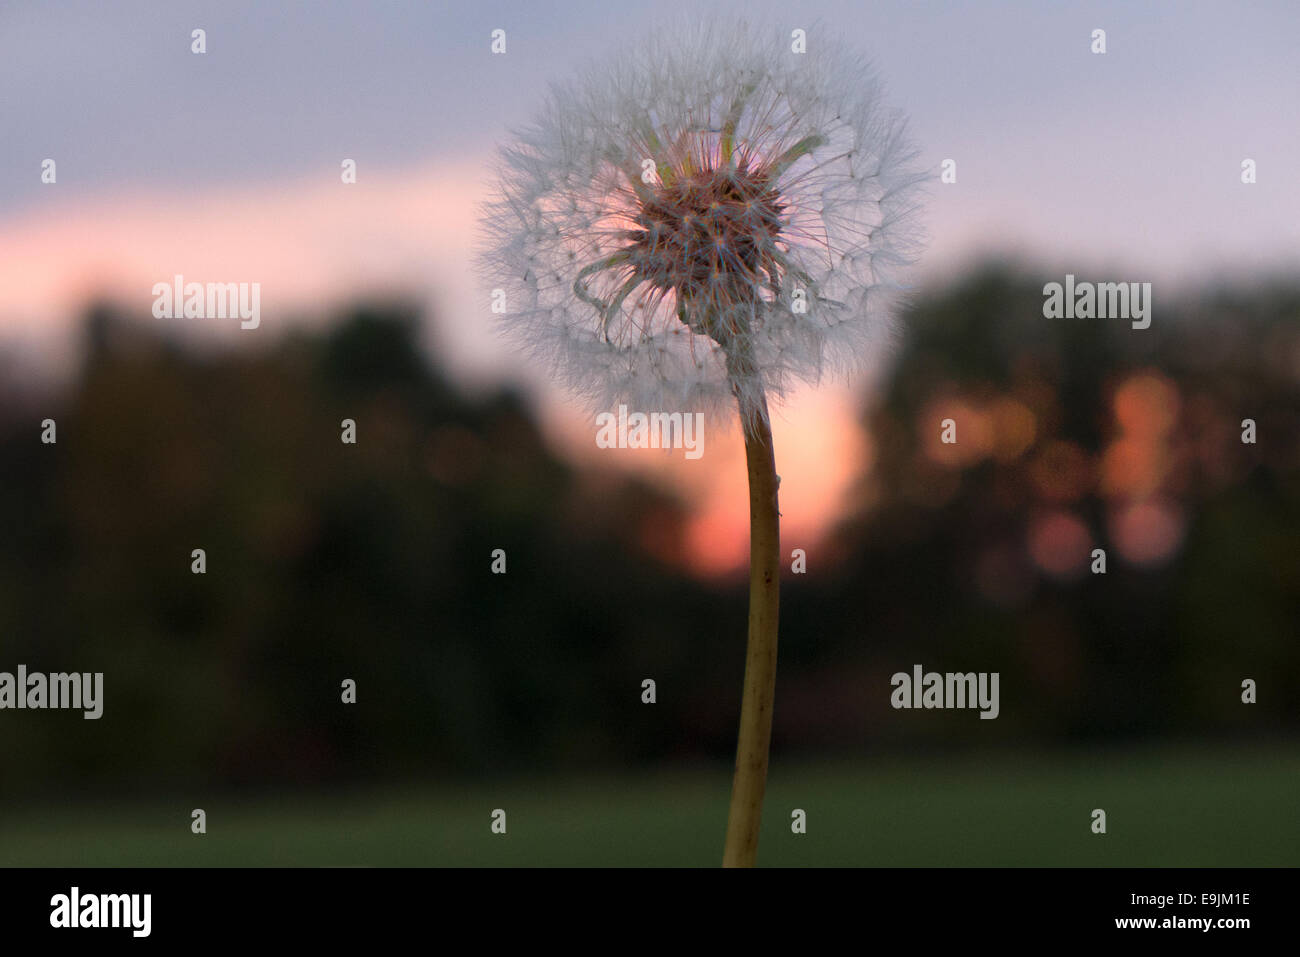 Dandelion against sunset sky. Stock Photo